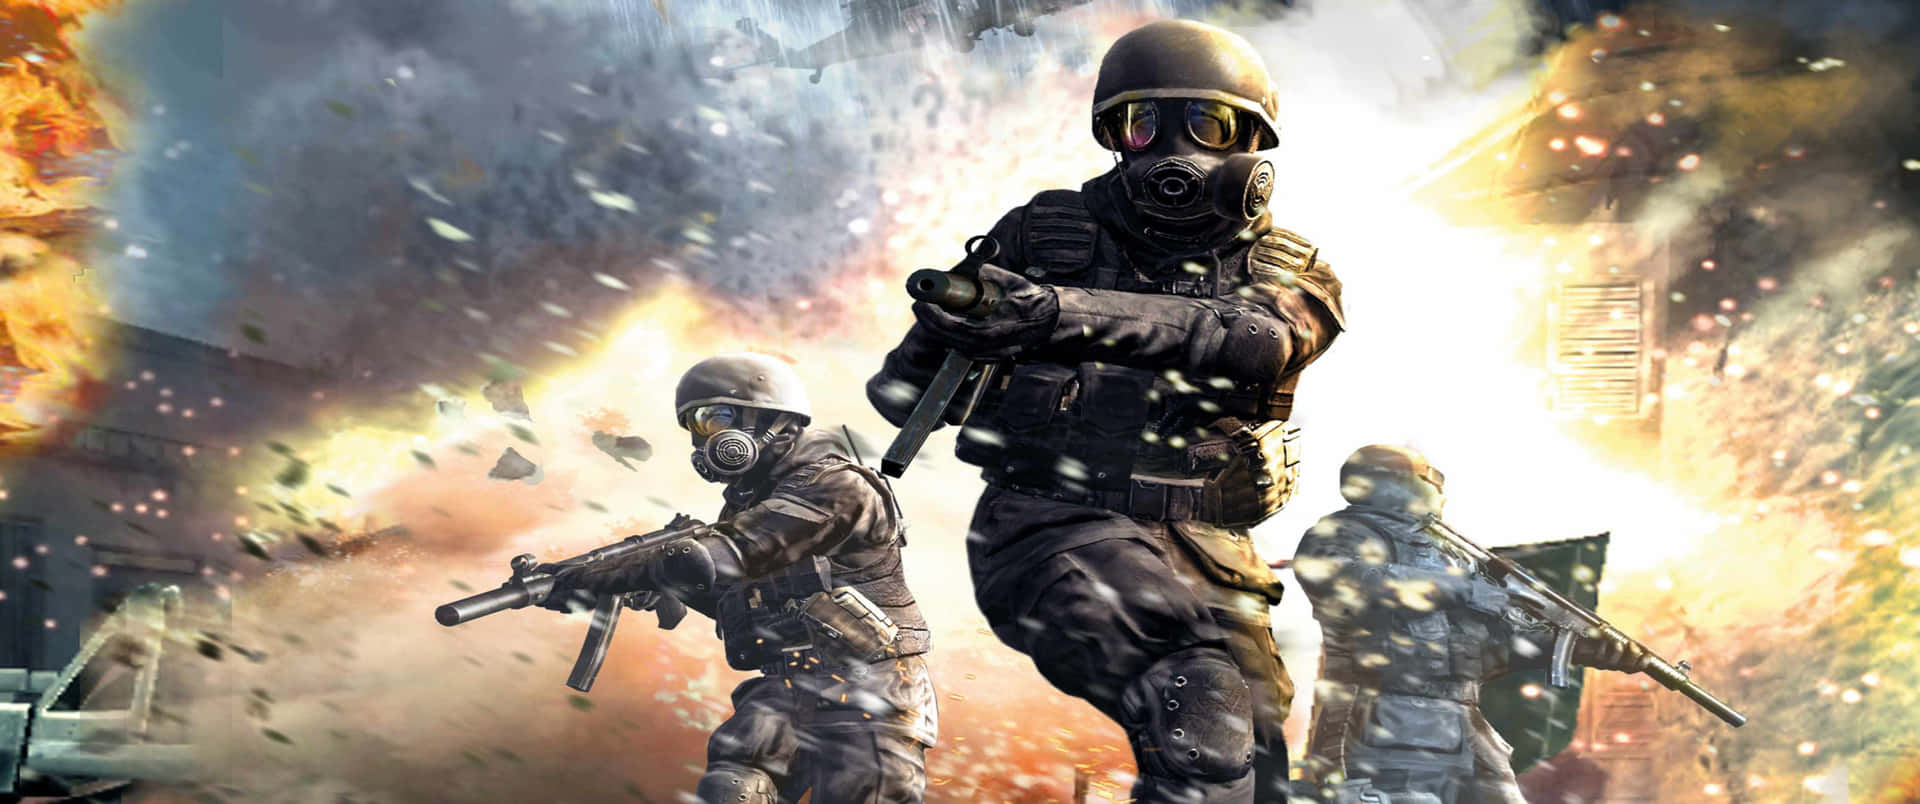 Granexplosión Fondo De Pantalla De Call Of Duty Modern Warfare De 3440x1440p